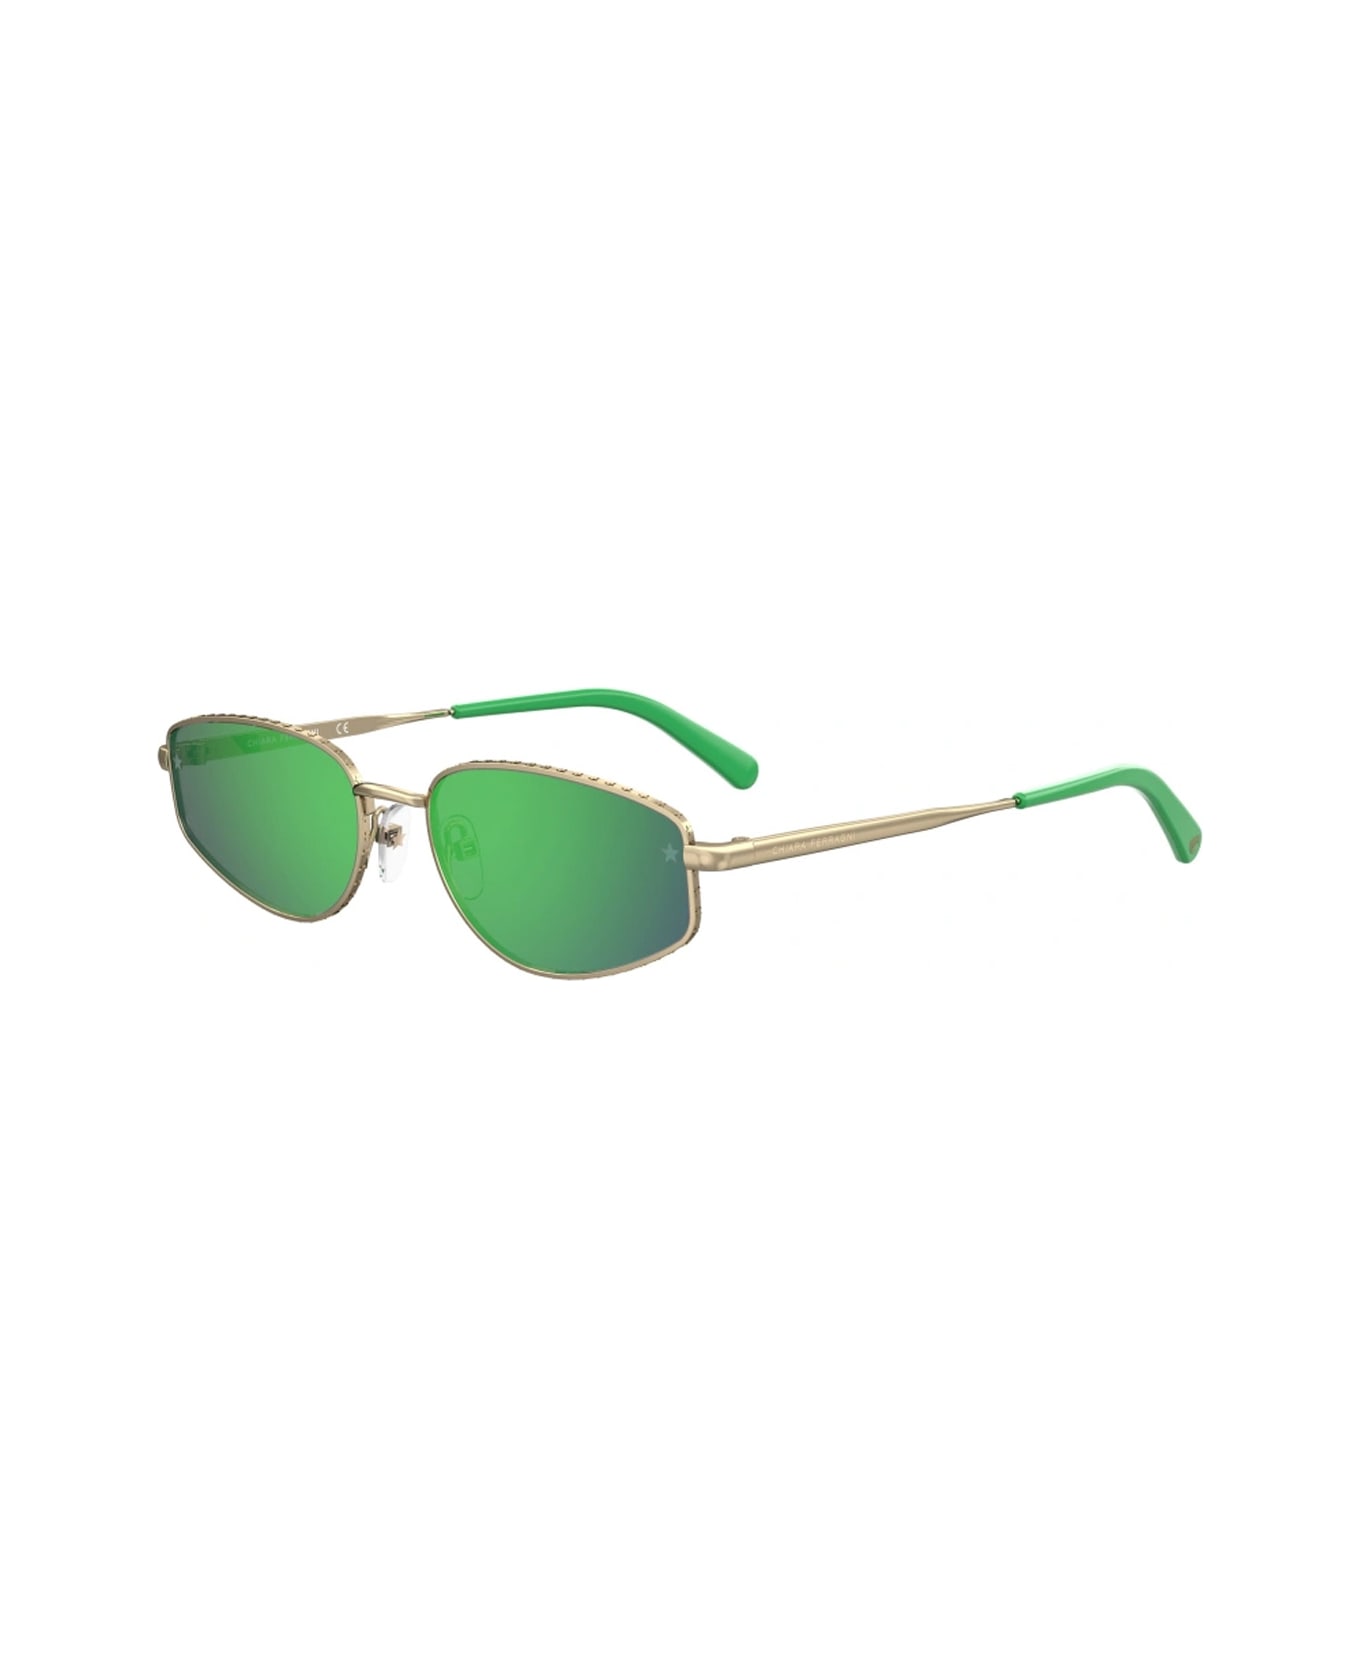 Chiara Ferragni Cf 7025/s Pef/z9 Gold Green Sunglasses - Oro サングラス